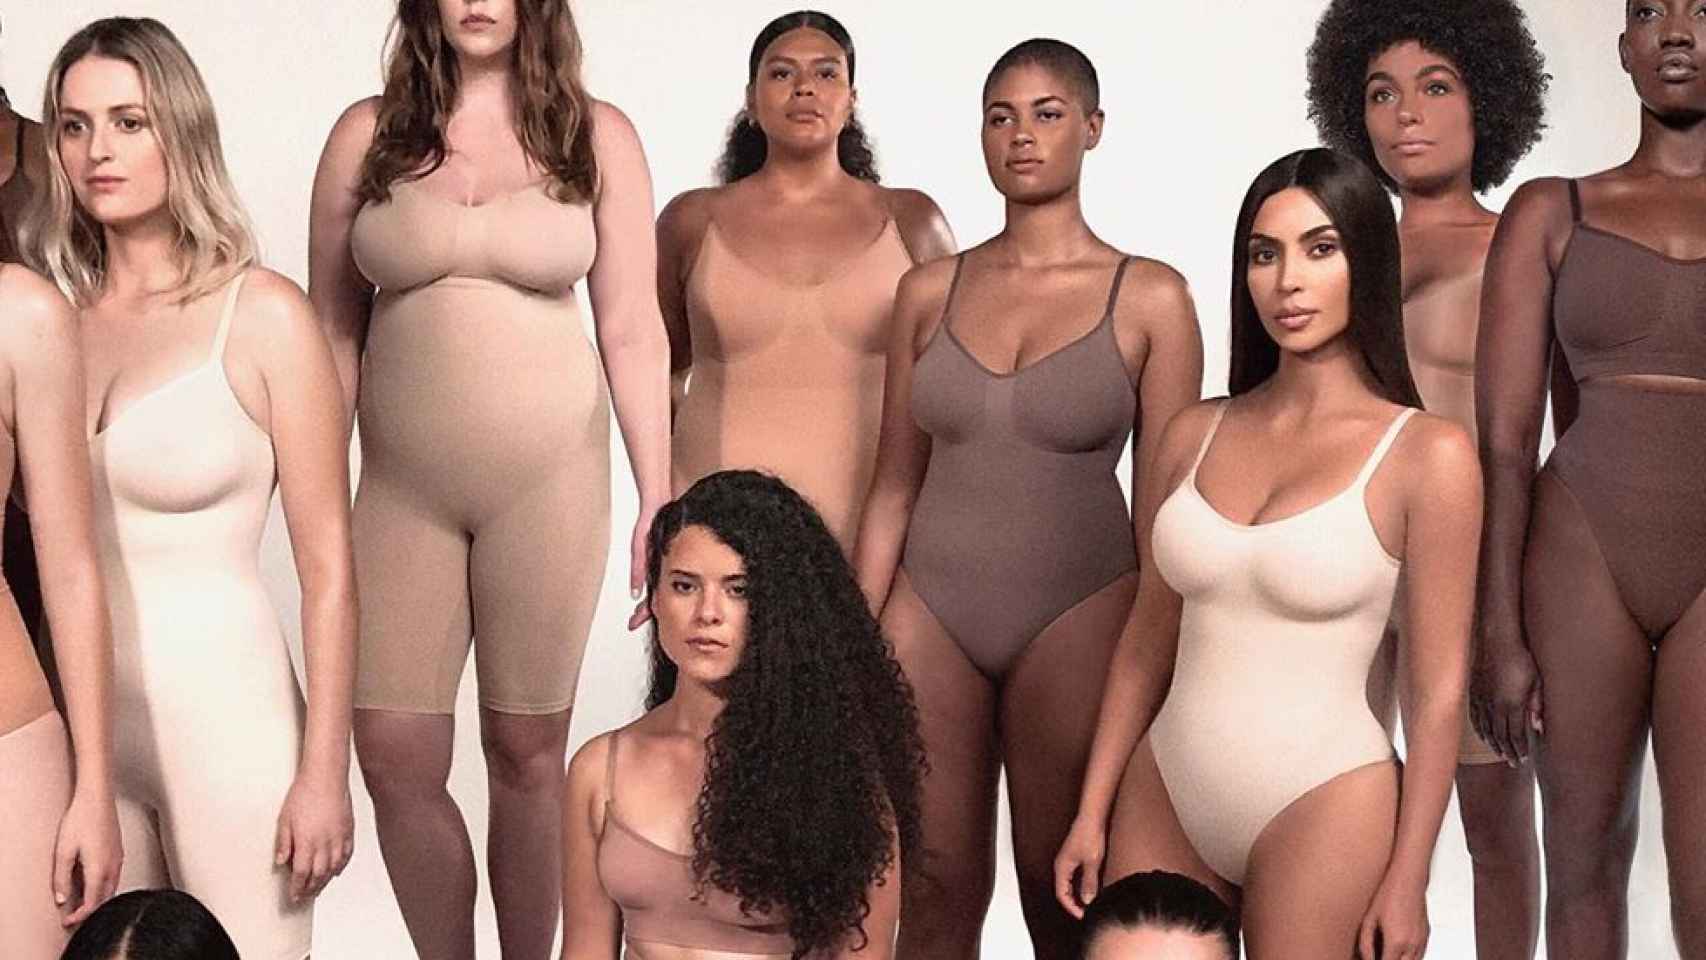 Barrio trimestre La base de datos Kim Kardashian relanza Skims, las fajas reductoras para todo tipo de mujeres